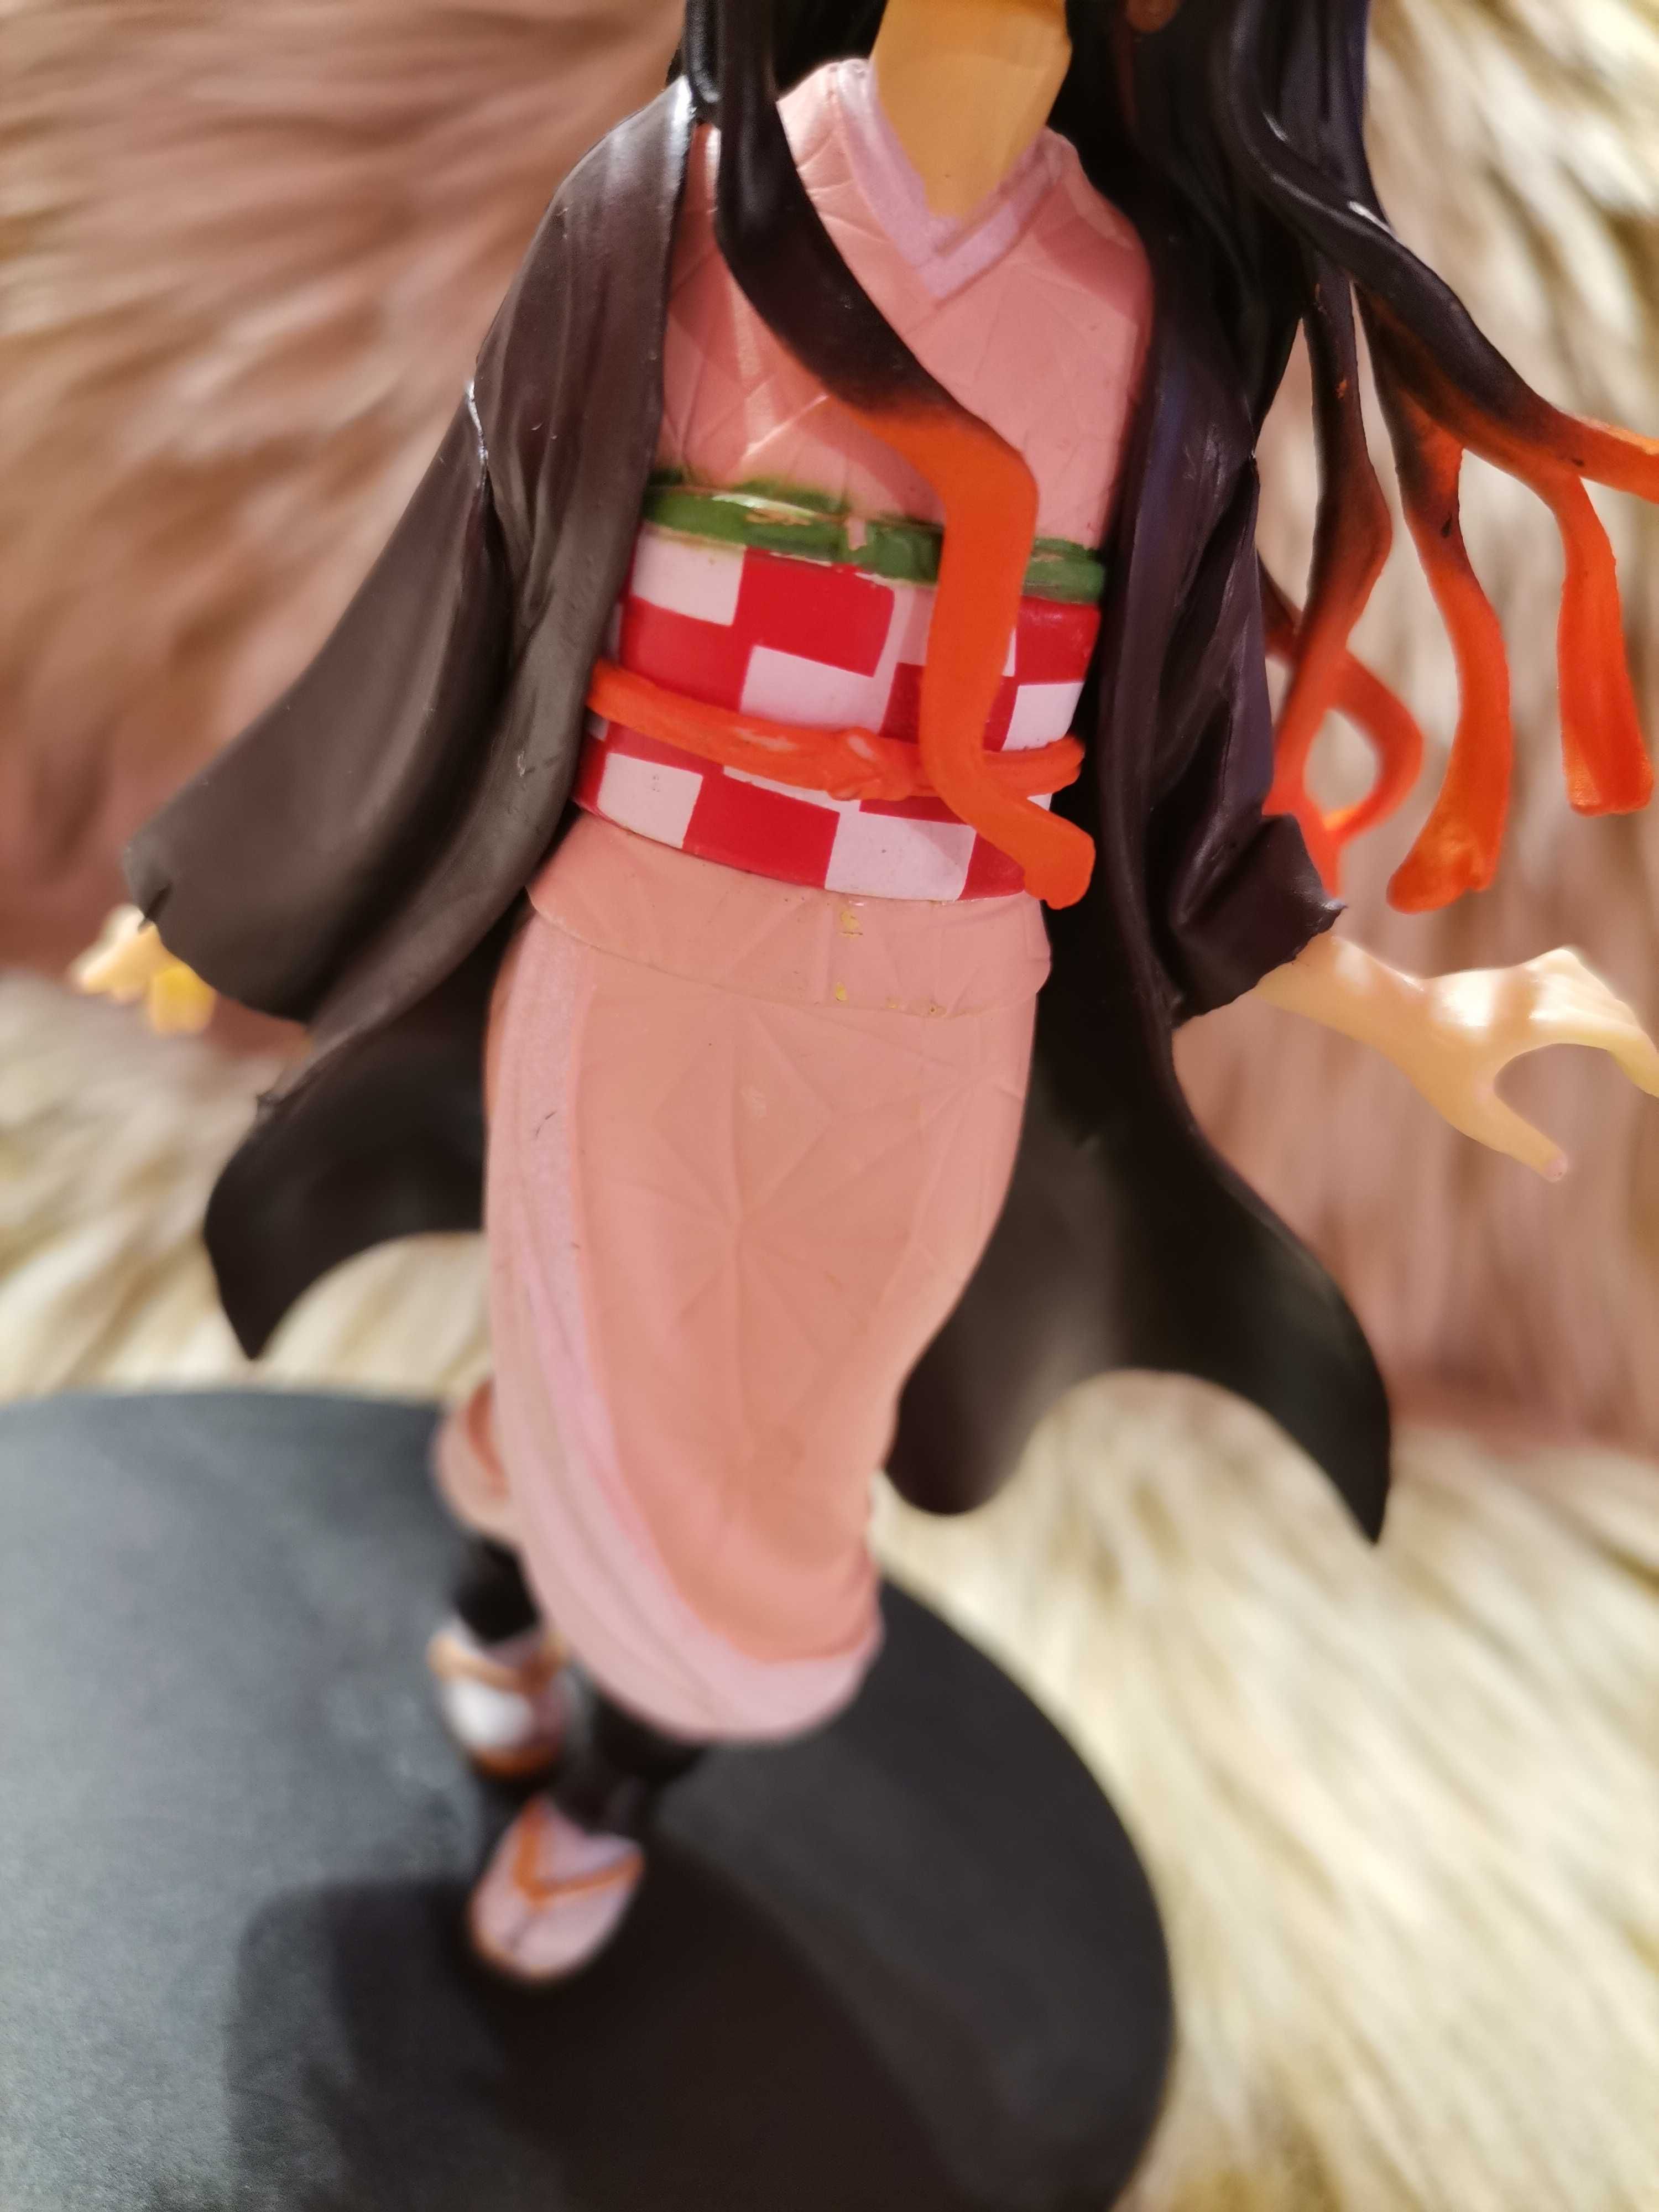 Figurina Nezuko Demon Slayer